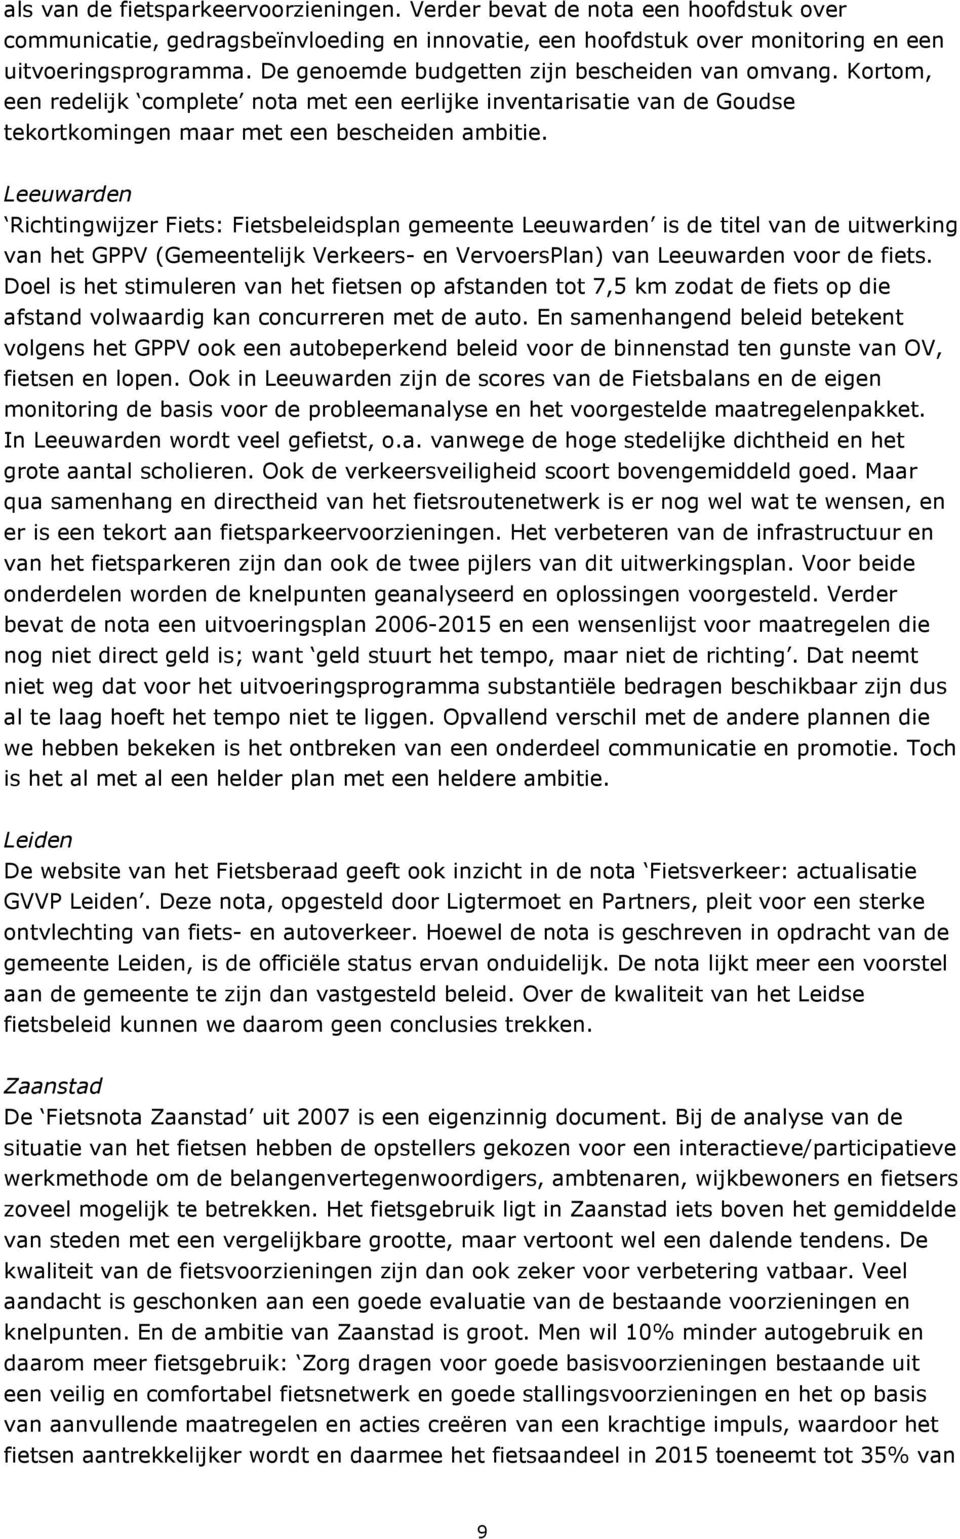 Leeuwarden Richtingwijzer Fiets: Fietsbeleidsplan gemeente Leeuwarden is de titel van de uitwerking van het GPPV (Gemeentelijk Verkeers- en VervoersPlan) van Leeuwarden voor de fiets.